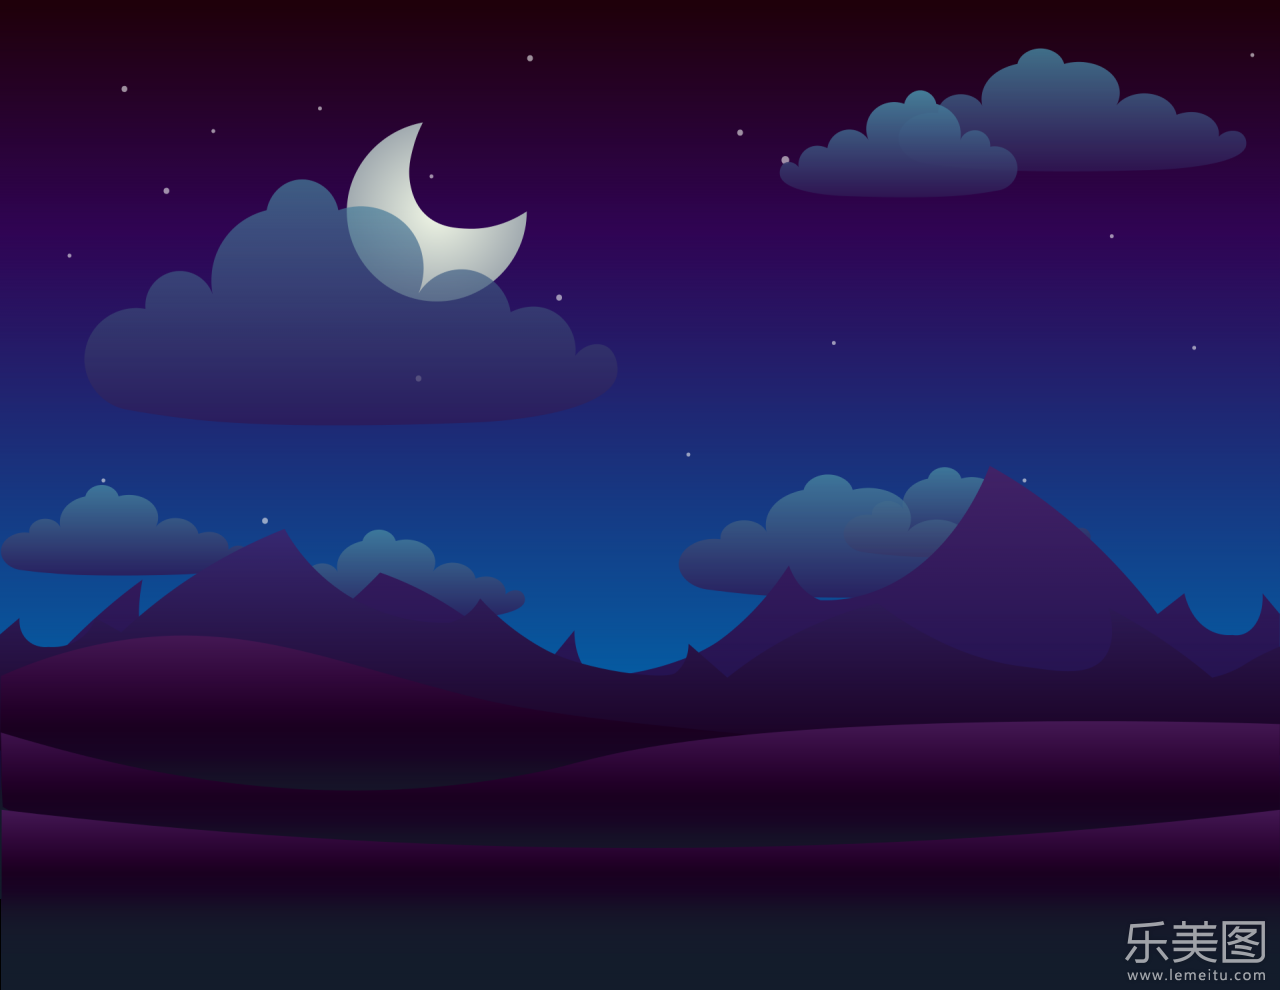 星空夜景插画远山和月亮挂在山间